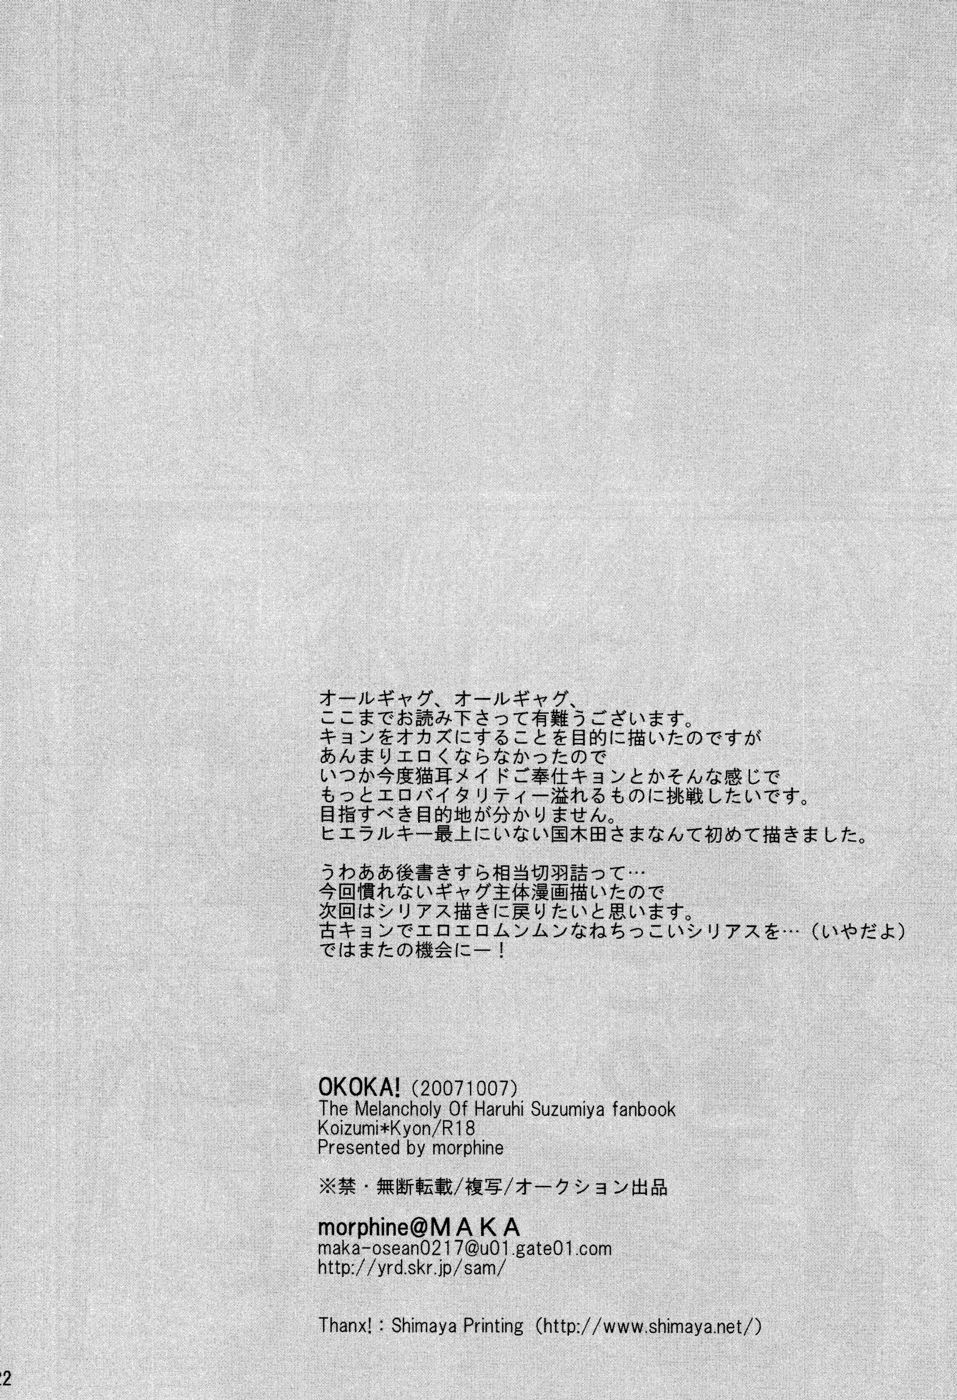 [morphine (MAKA)] OKOKA! (The Melancholy of Haruhi Suzumiya) [morphine (MAKA)] OKOKA! (涼宮ハルヒの憂鬱)